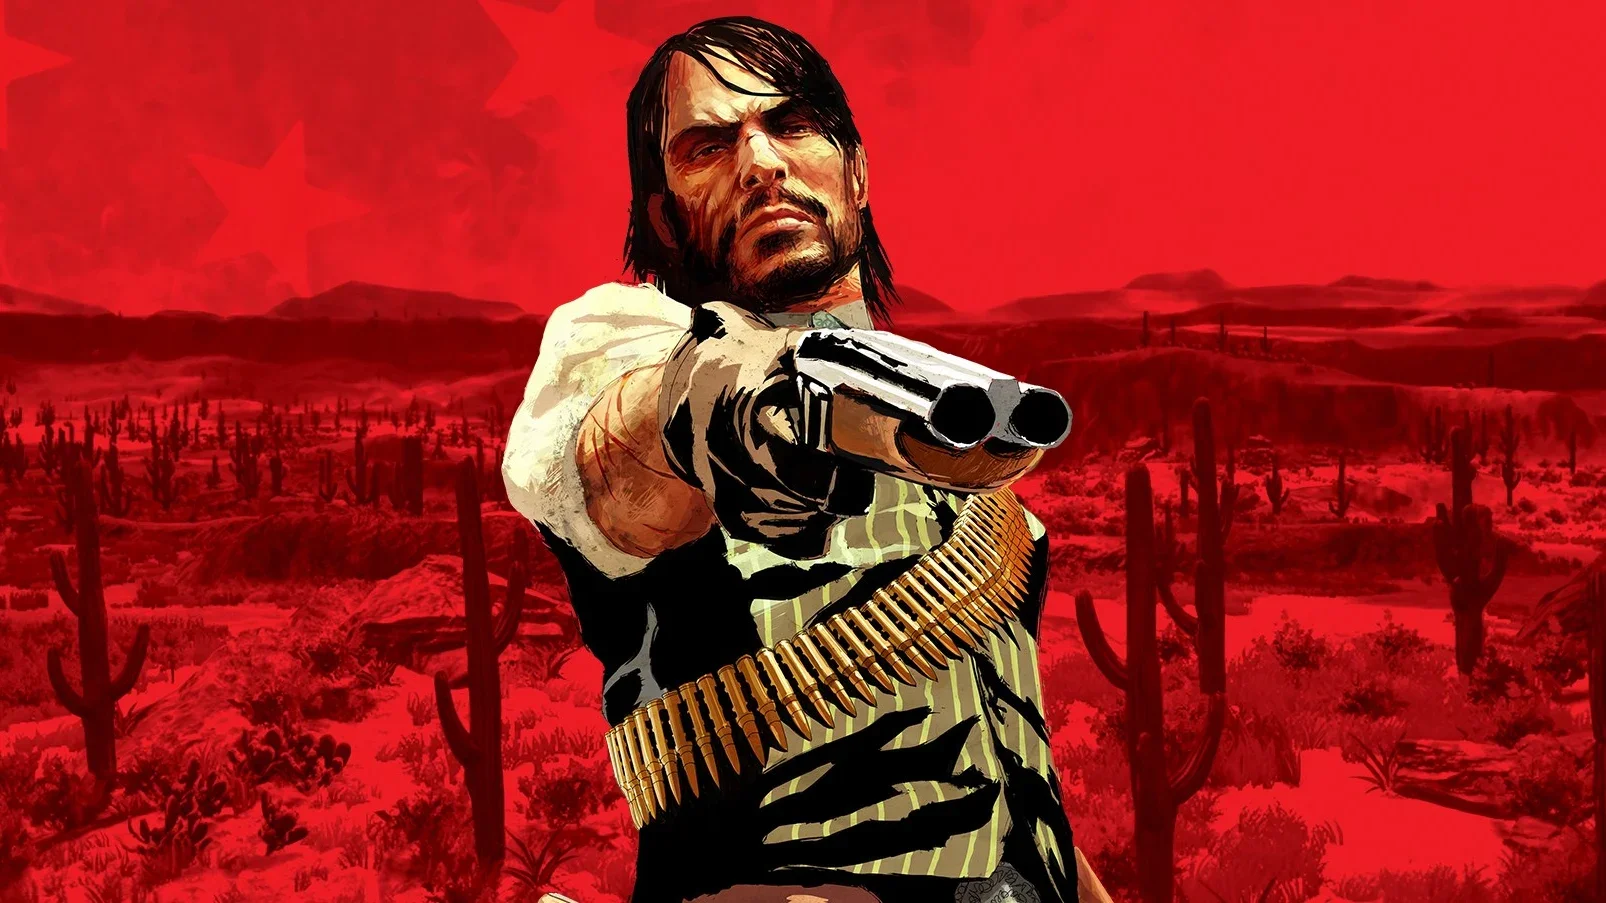 Red Dead Redemption не появится на PC в ближайшем будущем